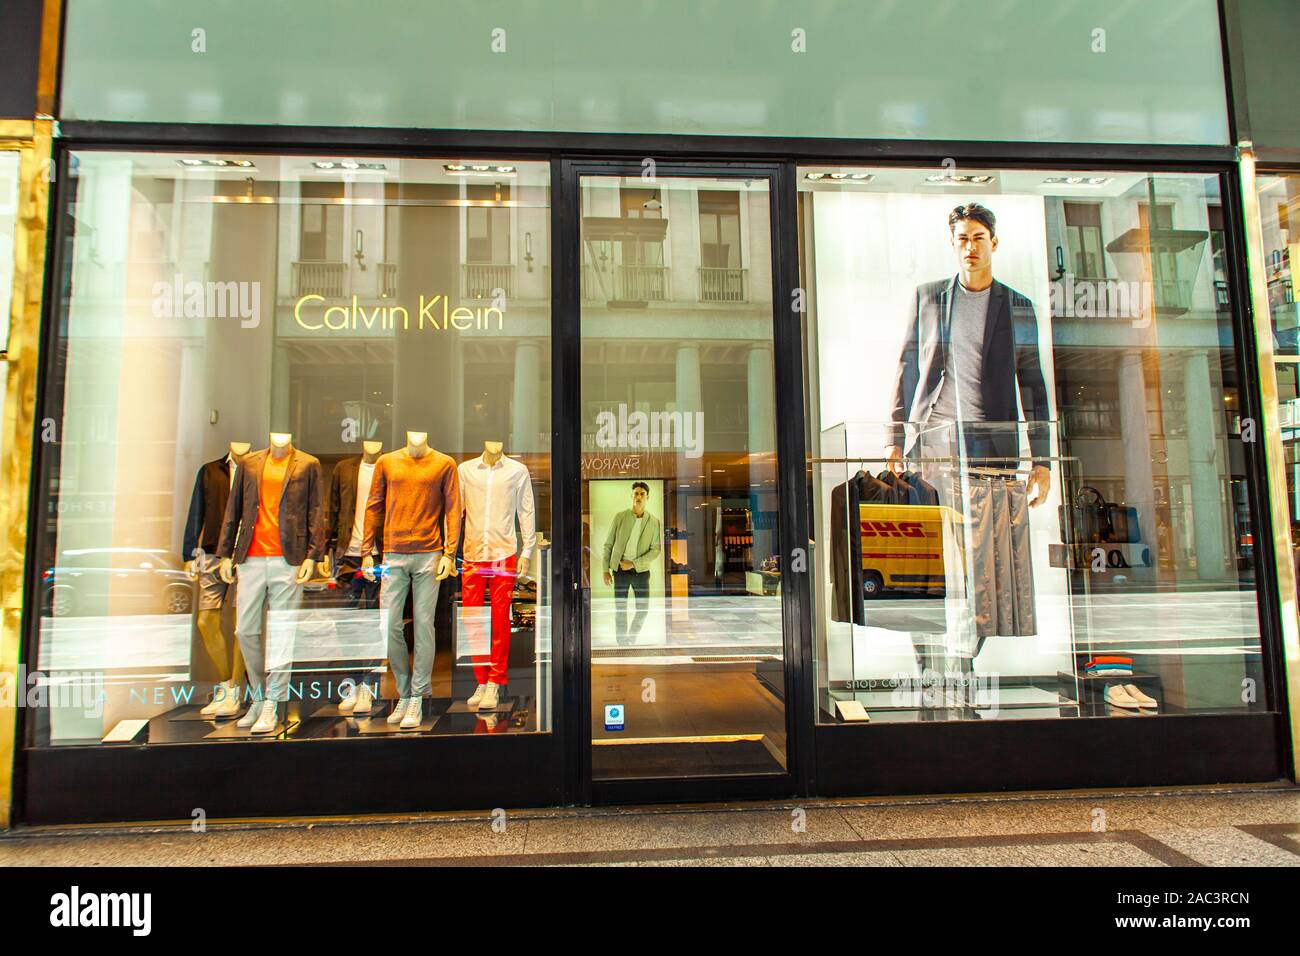 Calvin Klein clothes store – Stock Editorial Photo © teamtime #139492108